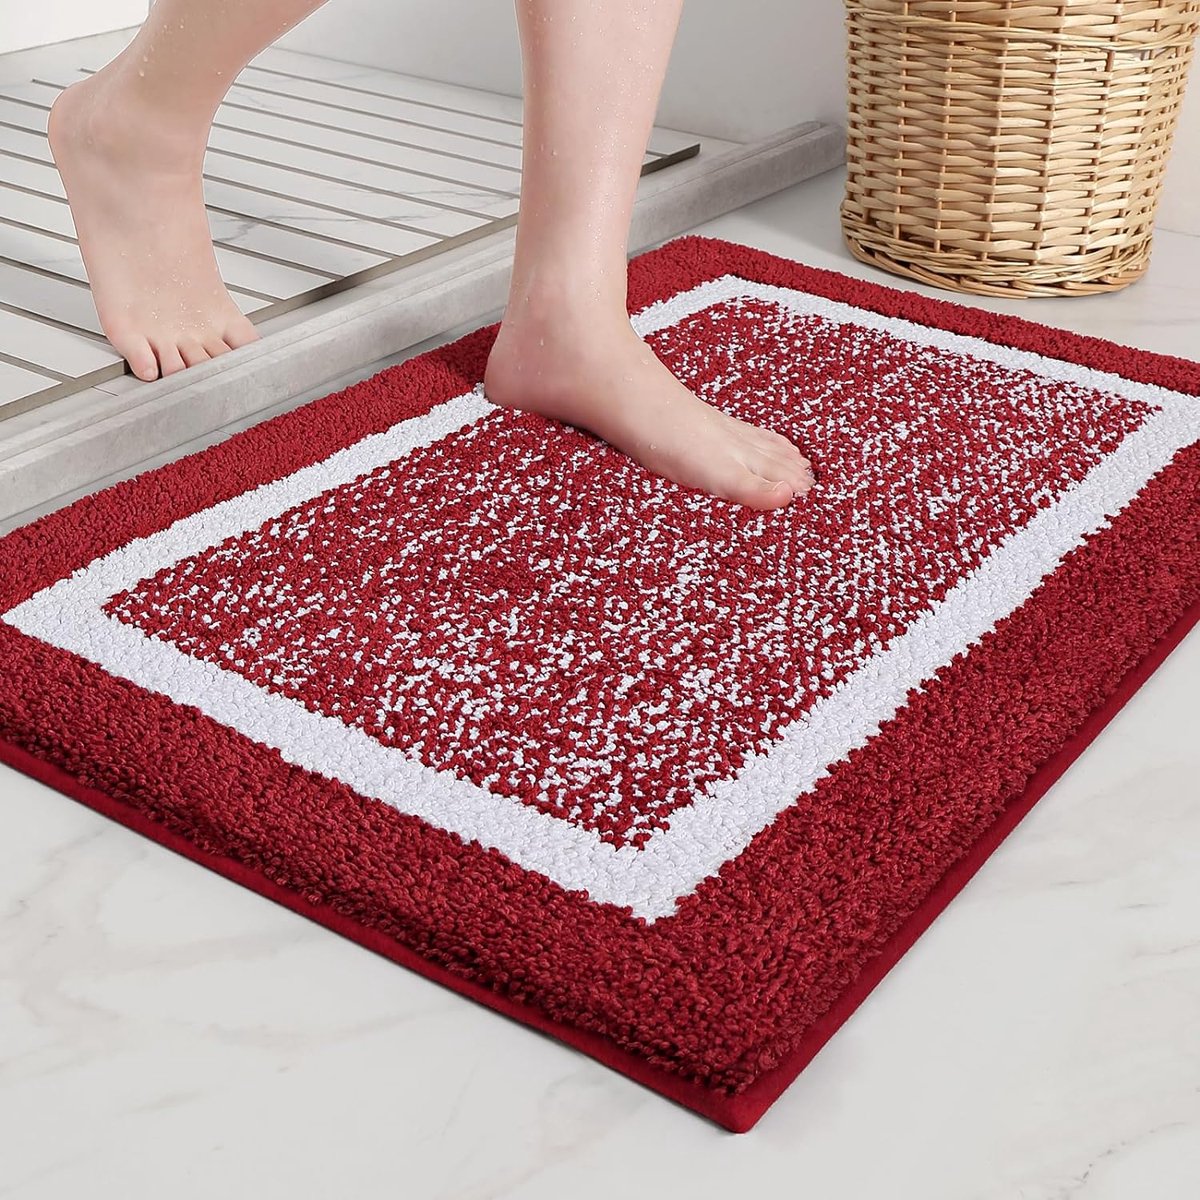 Badmat 50 x 75 cm, badkamertapijt, antislip, badmat, zachte badmat, machinewasbaar, microvezel absorberend tapijt voor badkamer (rood)